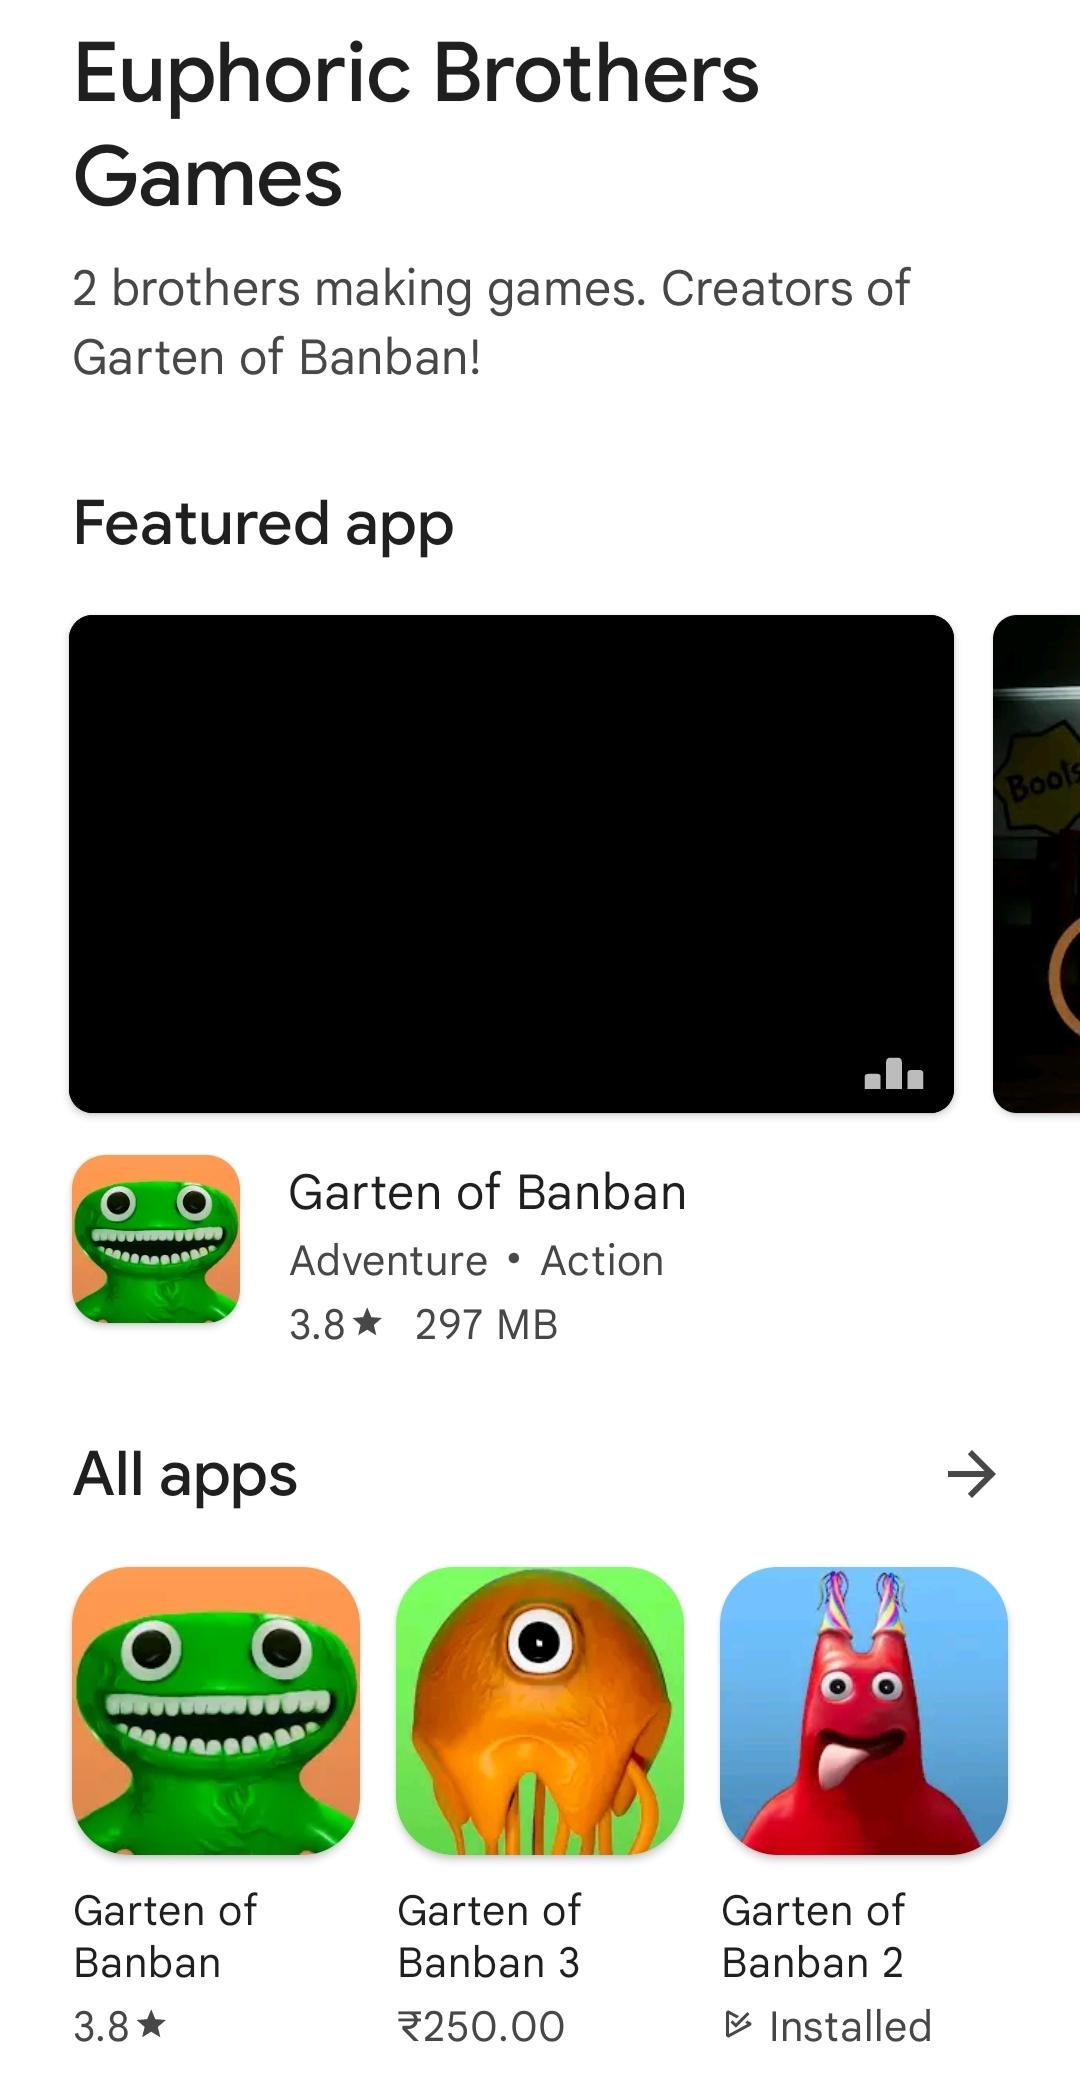 Garten of Banban 2, Apps